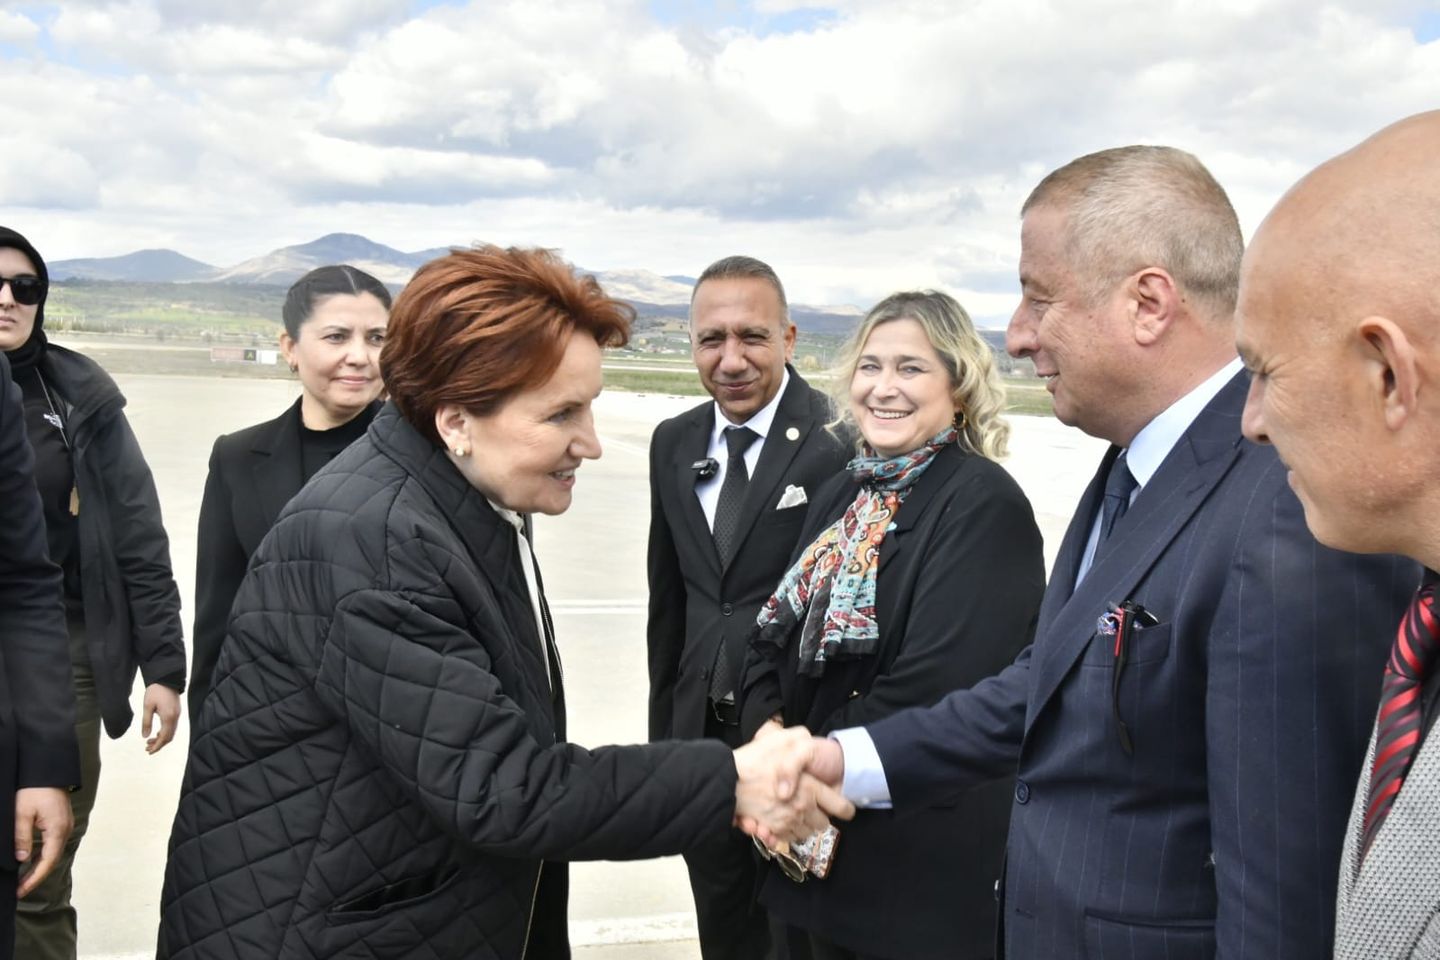 İyi Parti Milletvekili Hakan Şeref Olgun, Meral Akşener ile Afyonkarahisar'da ziyaretlerde bulundu ve iftara katıldı.